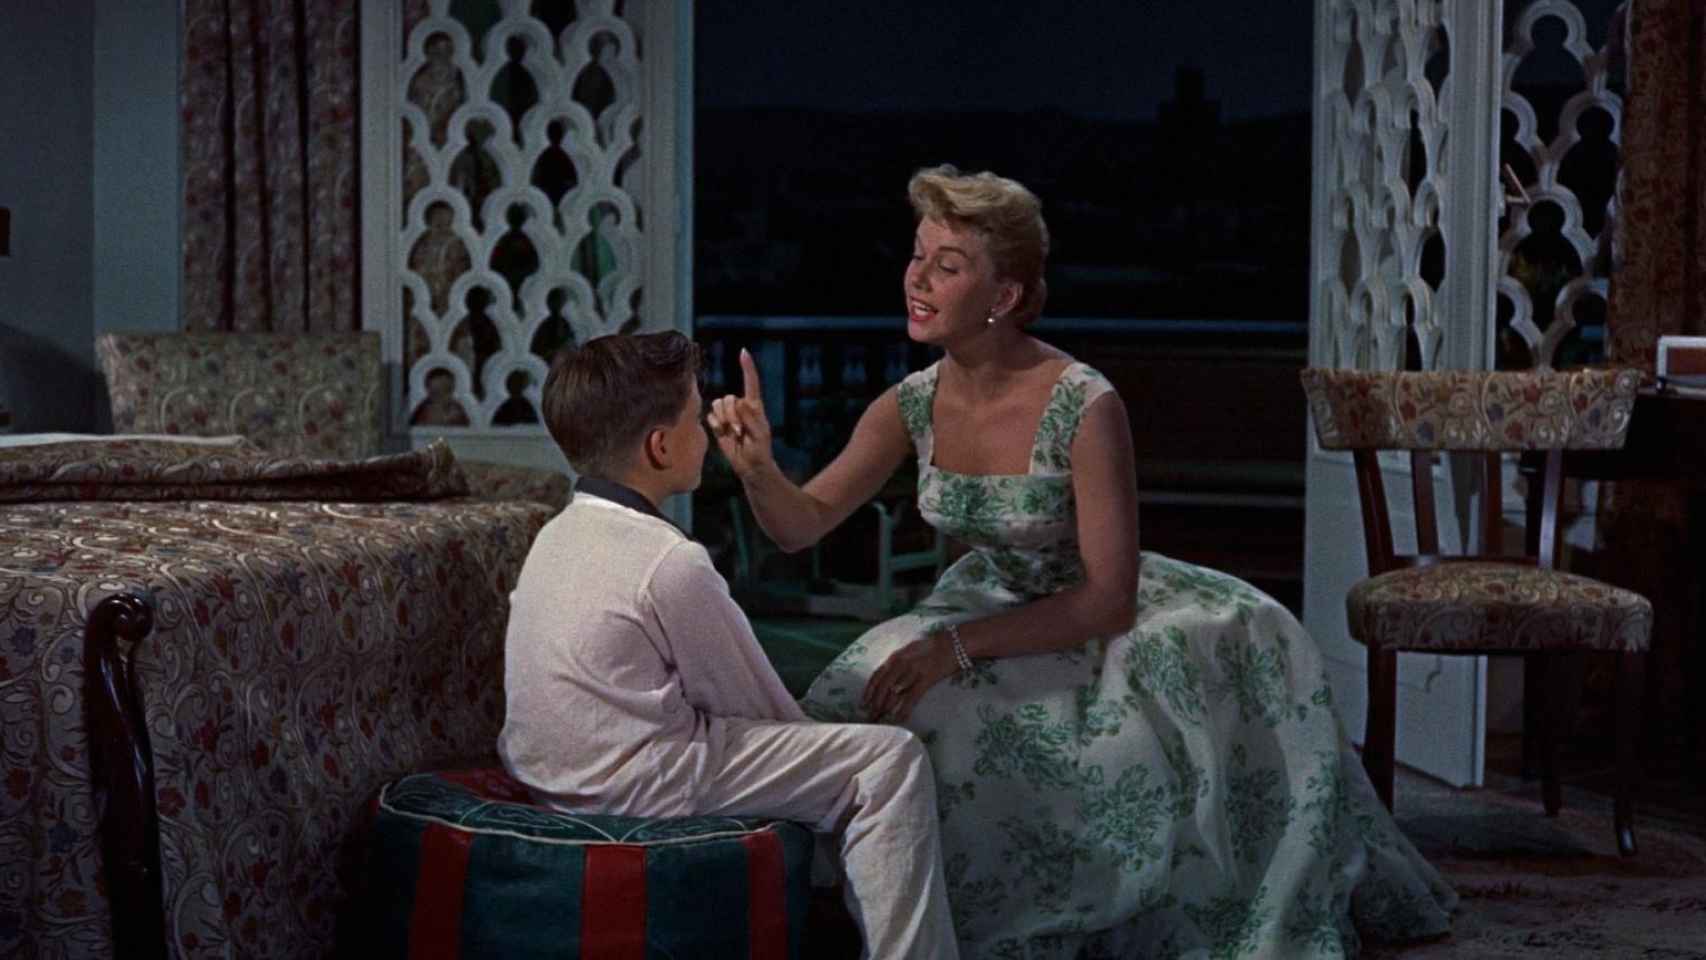 Doris Day cantando 'Qué será, será' en la película 'El hombre que sabía demasiado'.